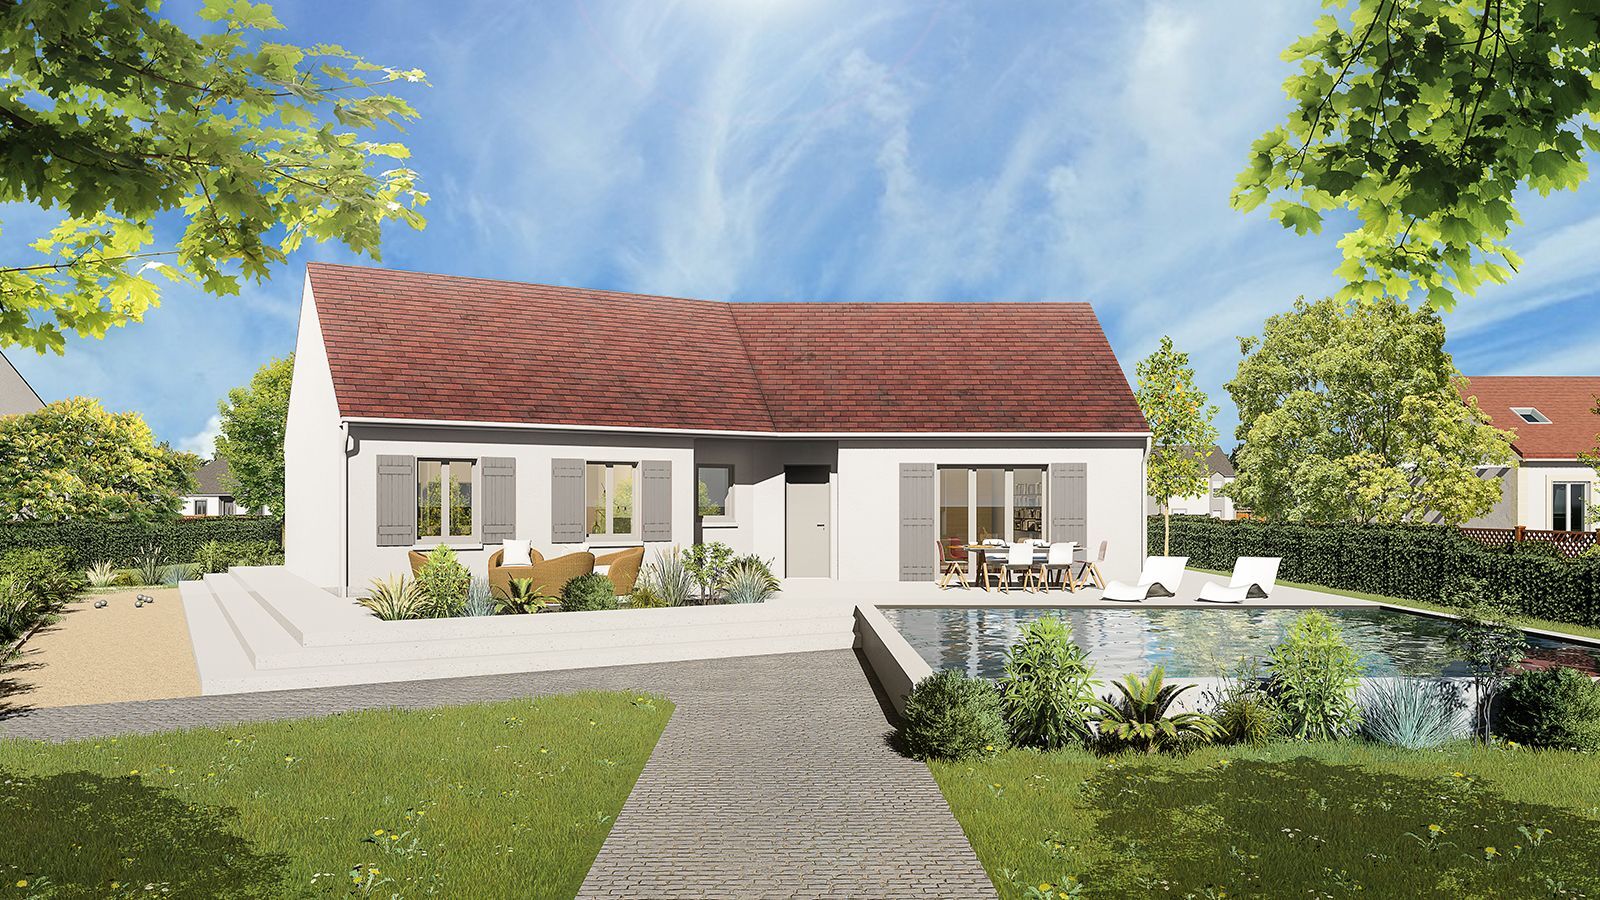 Vente Maison neuve 90 m² à La Croix-en-Brie 229 790 €